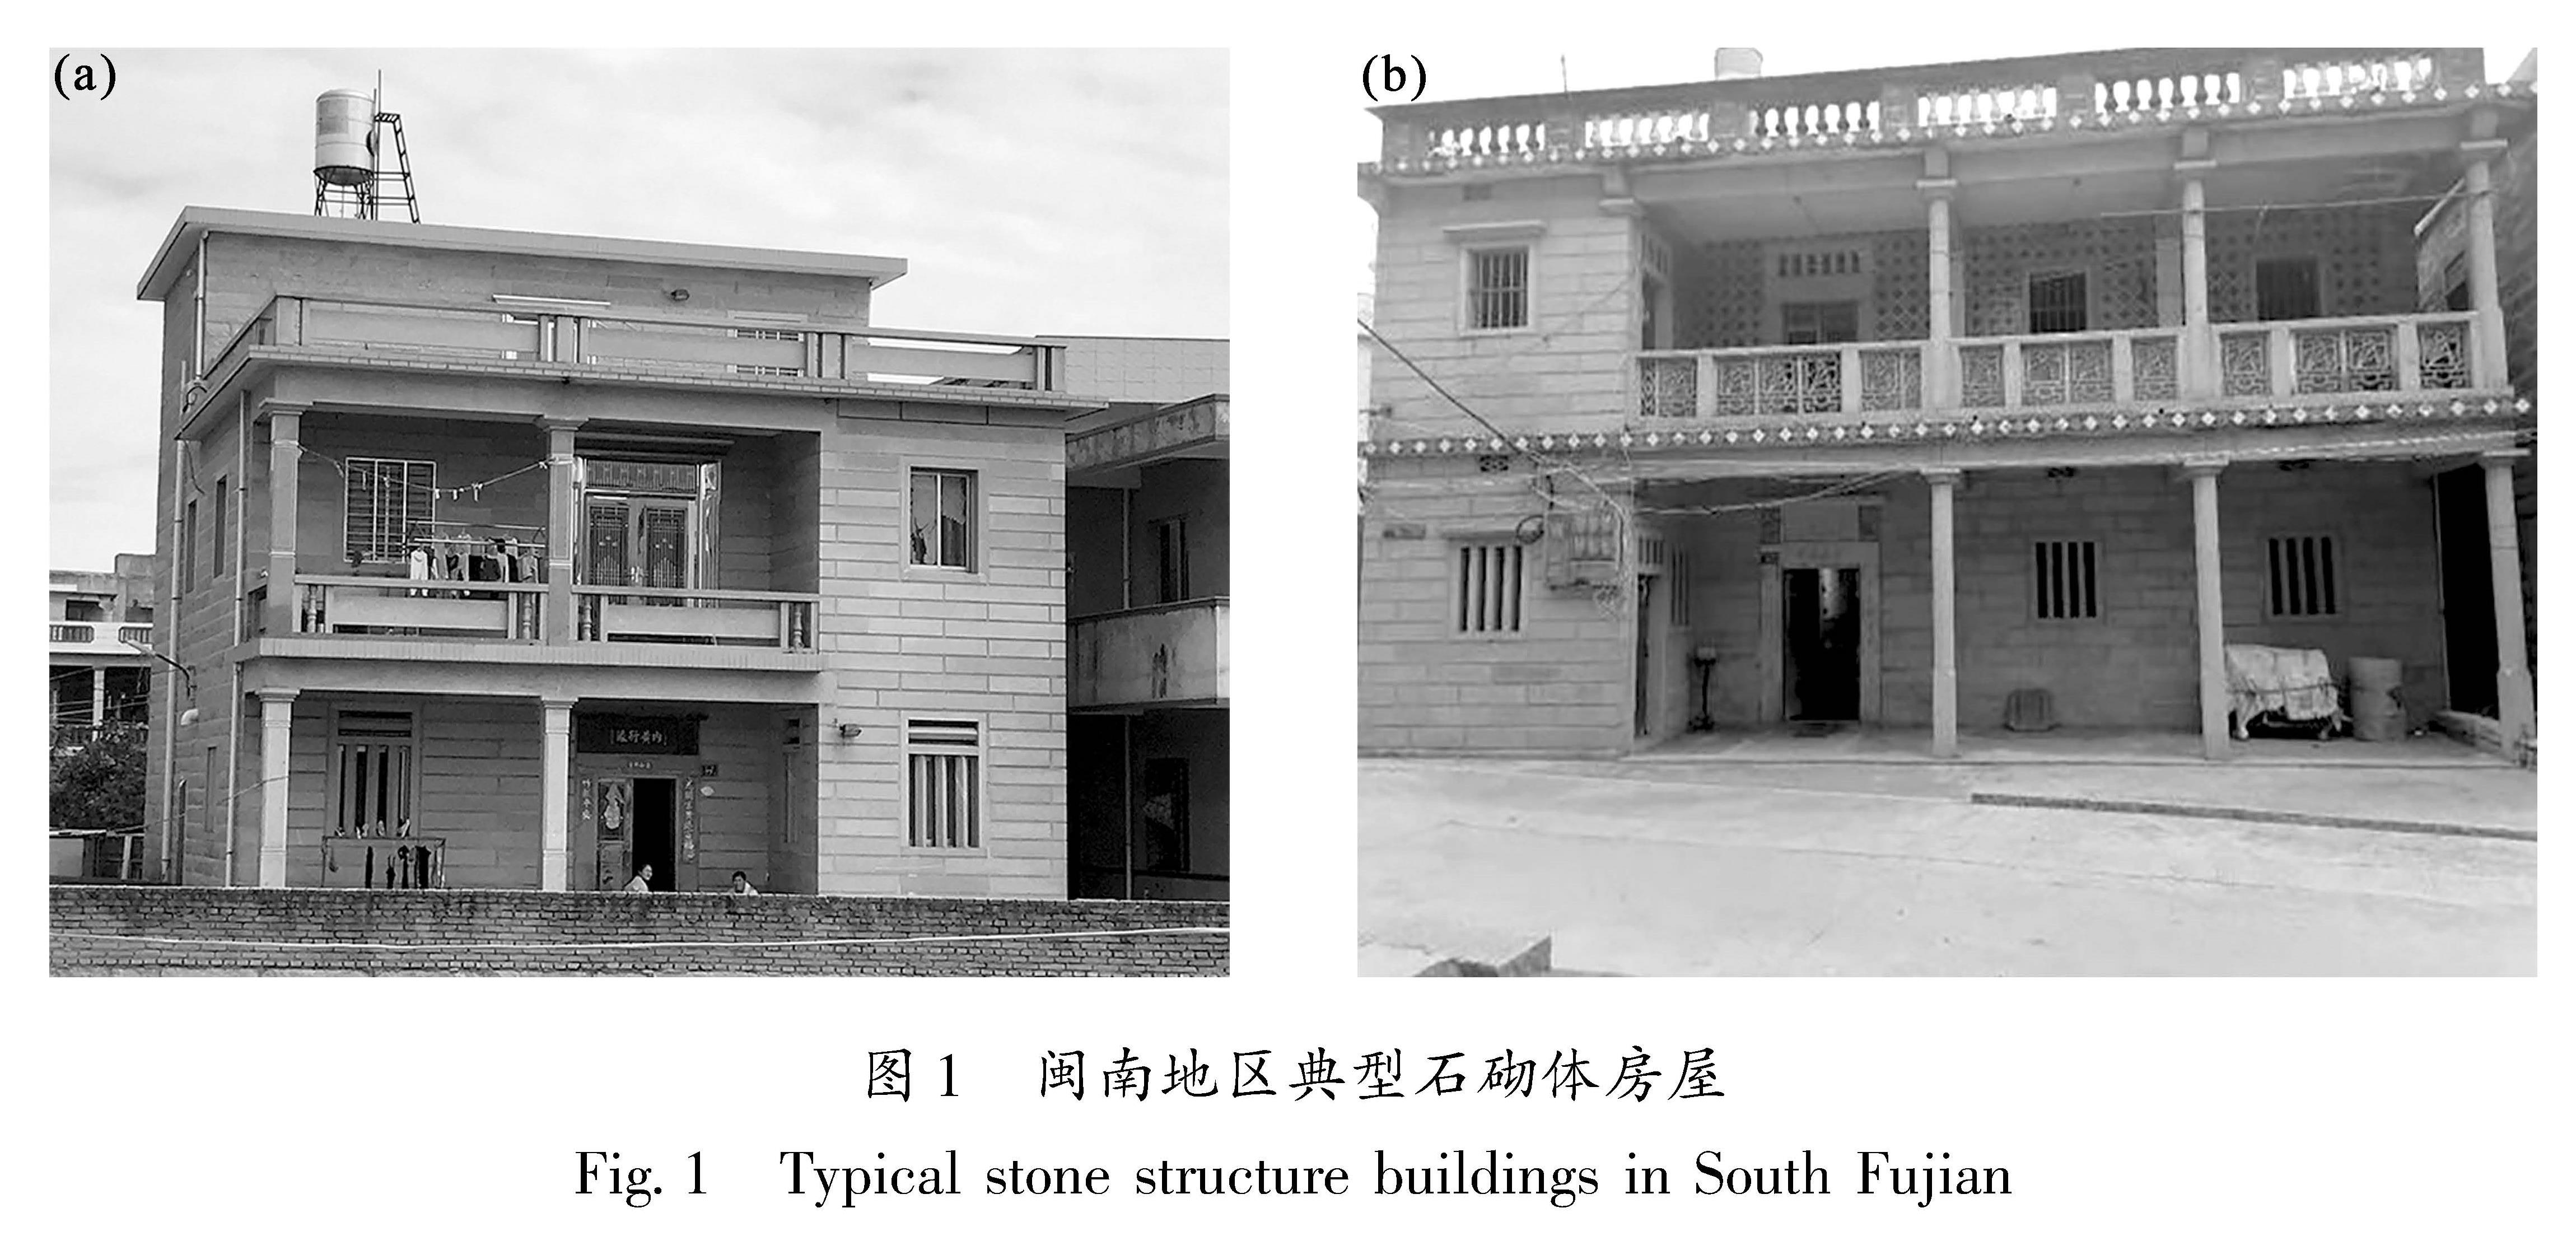 图1 闽南地区典型石砌体房屋<br/>Fig.1 Typical stone structure buildings in South Fujian